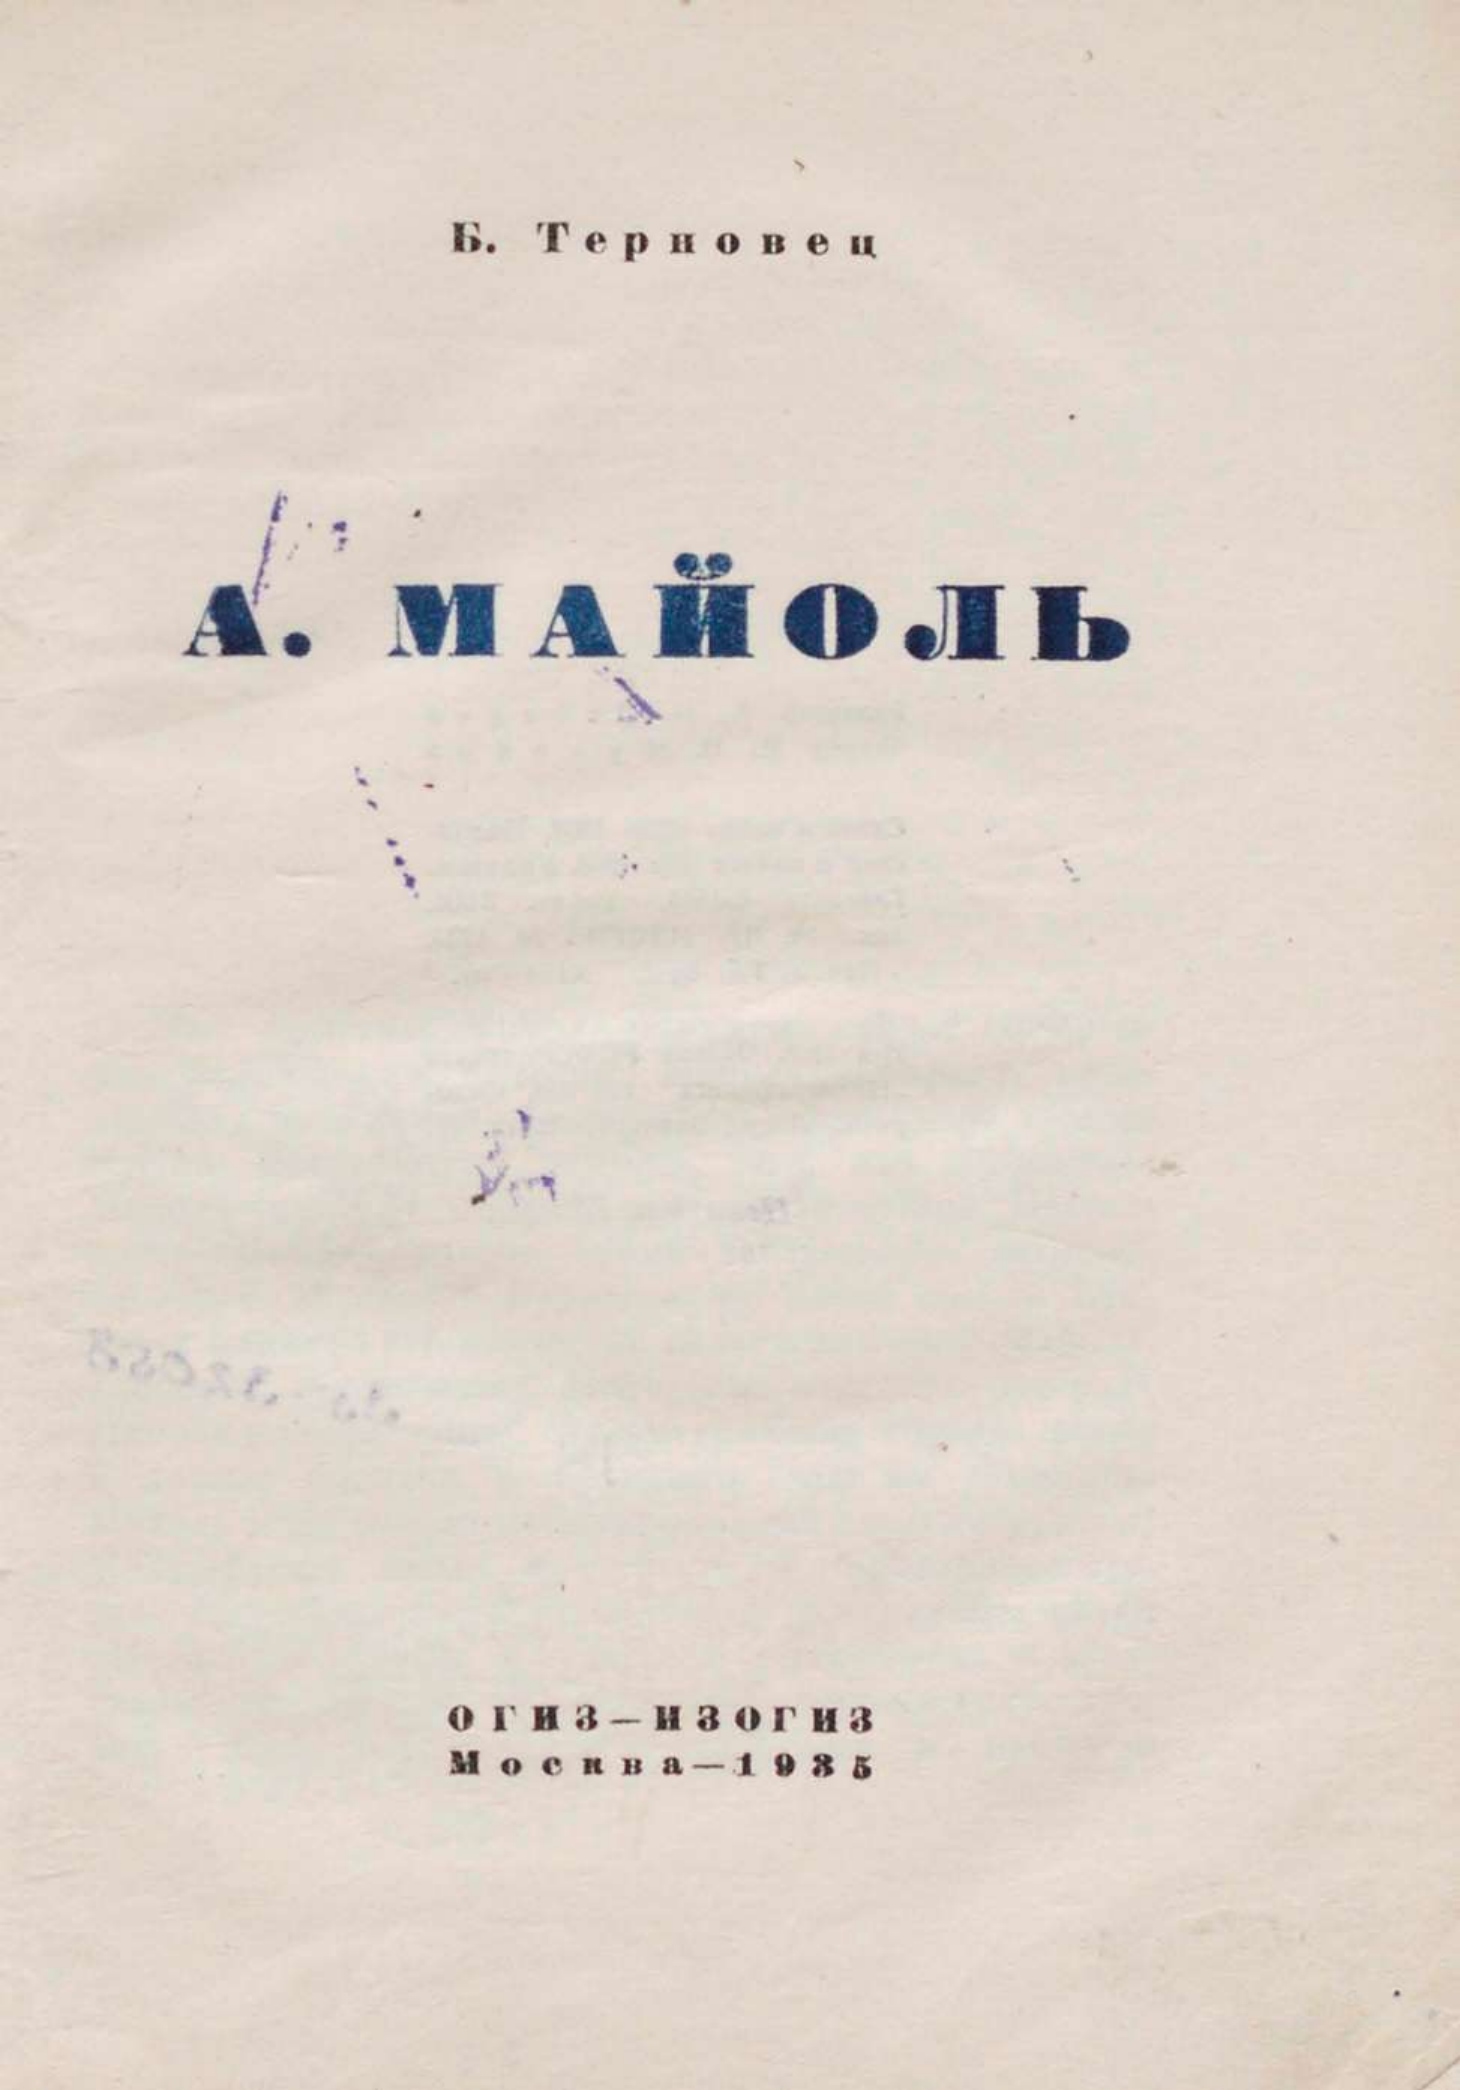 А. Майоль / Б. Терновец. — Москва : ОГИЗ — ИЗОГИЗ, 1935